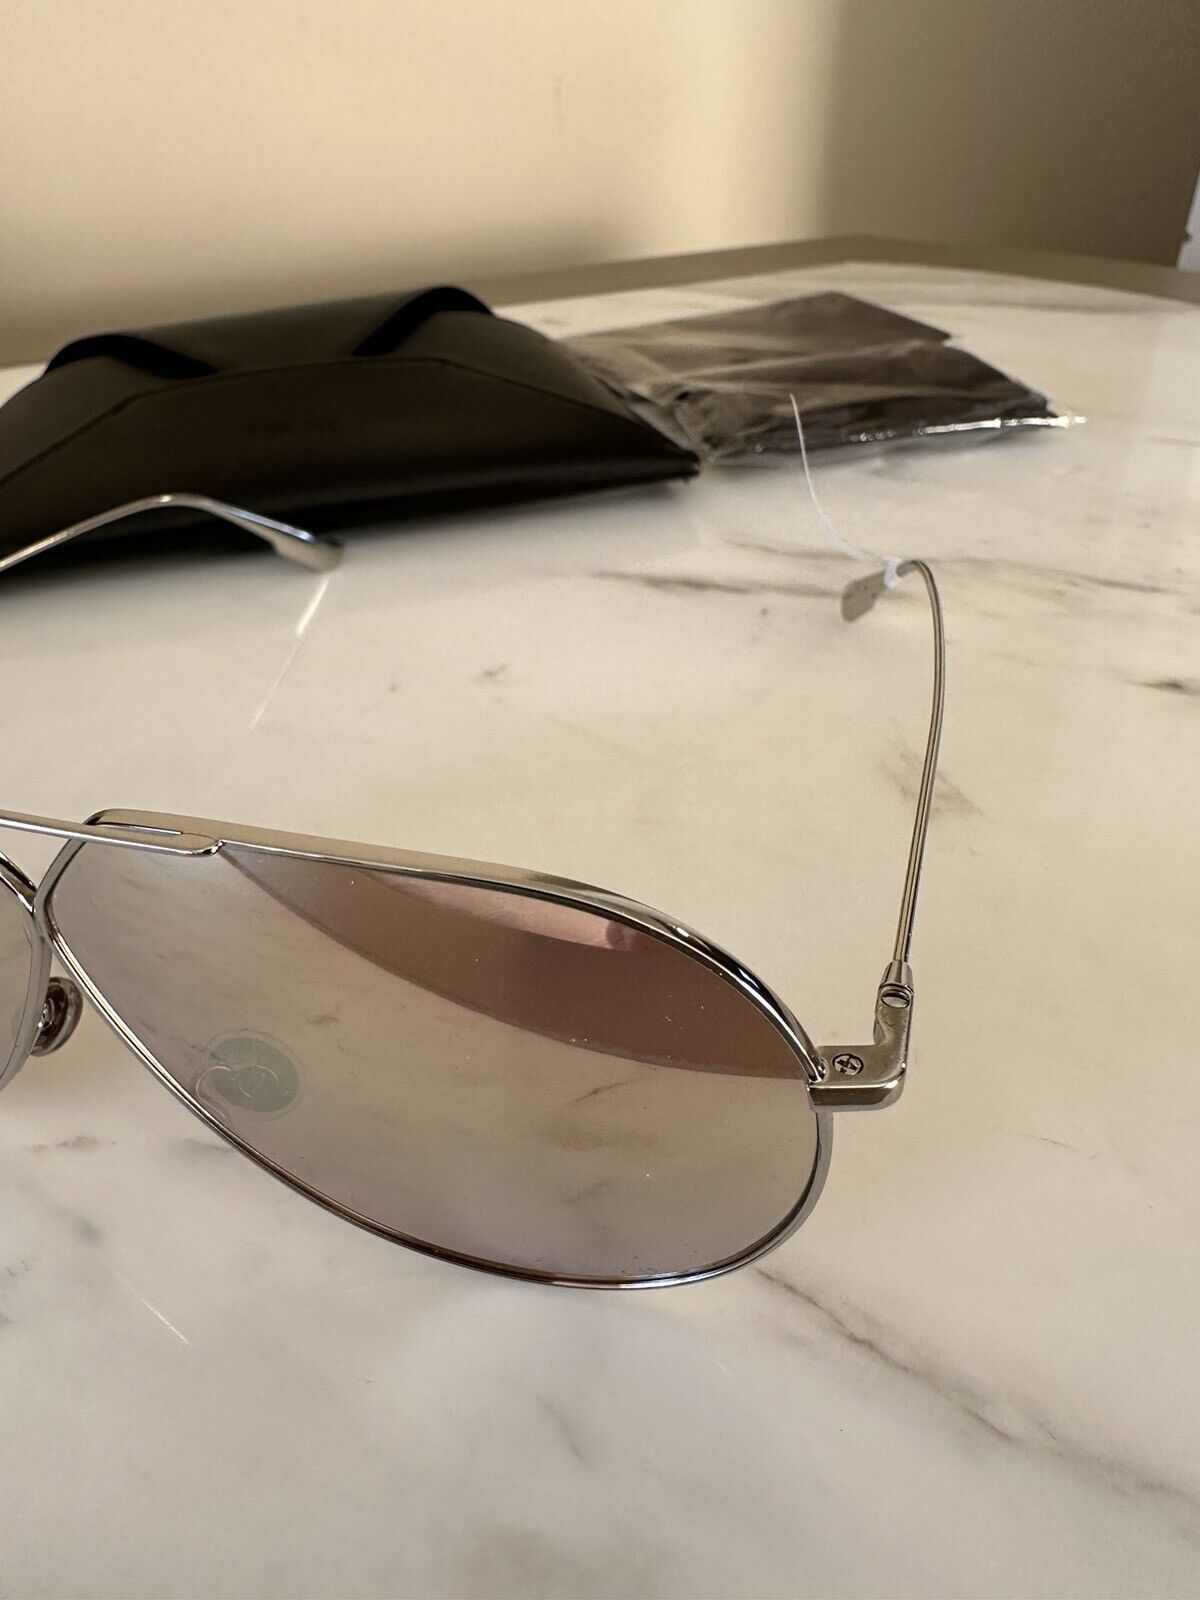 Новые солнцезащитные очки-авиаторы Dior диаметром 55 мм, поляризованные, цвет ШАМПАНСКОЕ O10SQ, стоимостью 420 долларов.